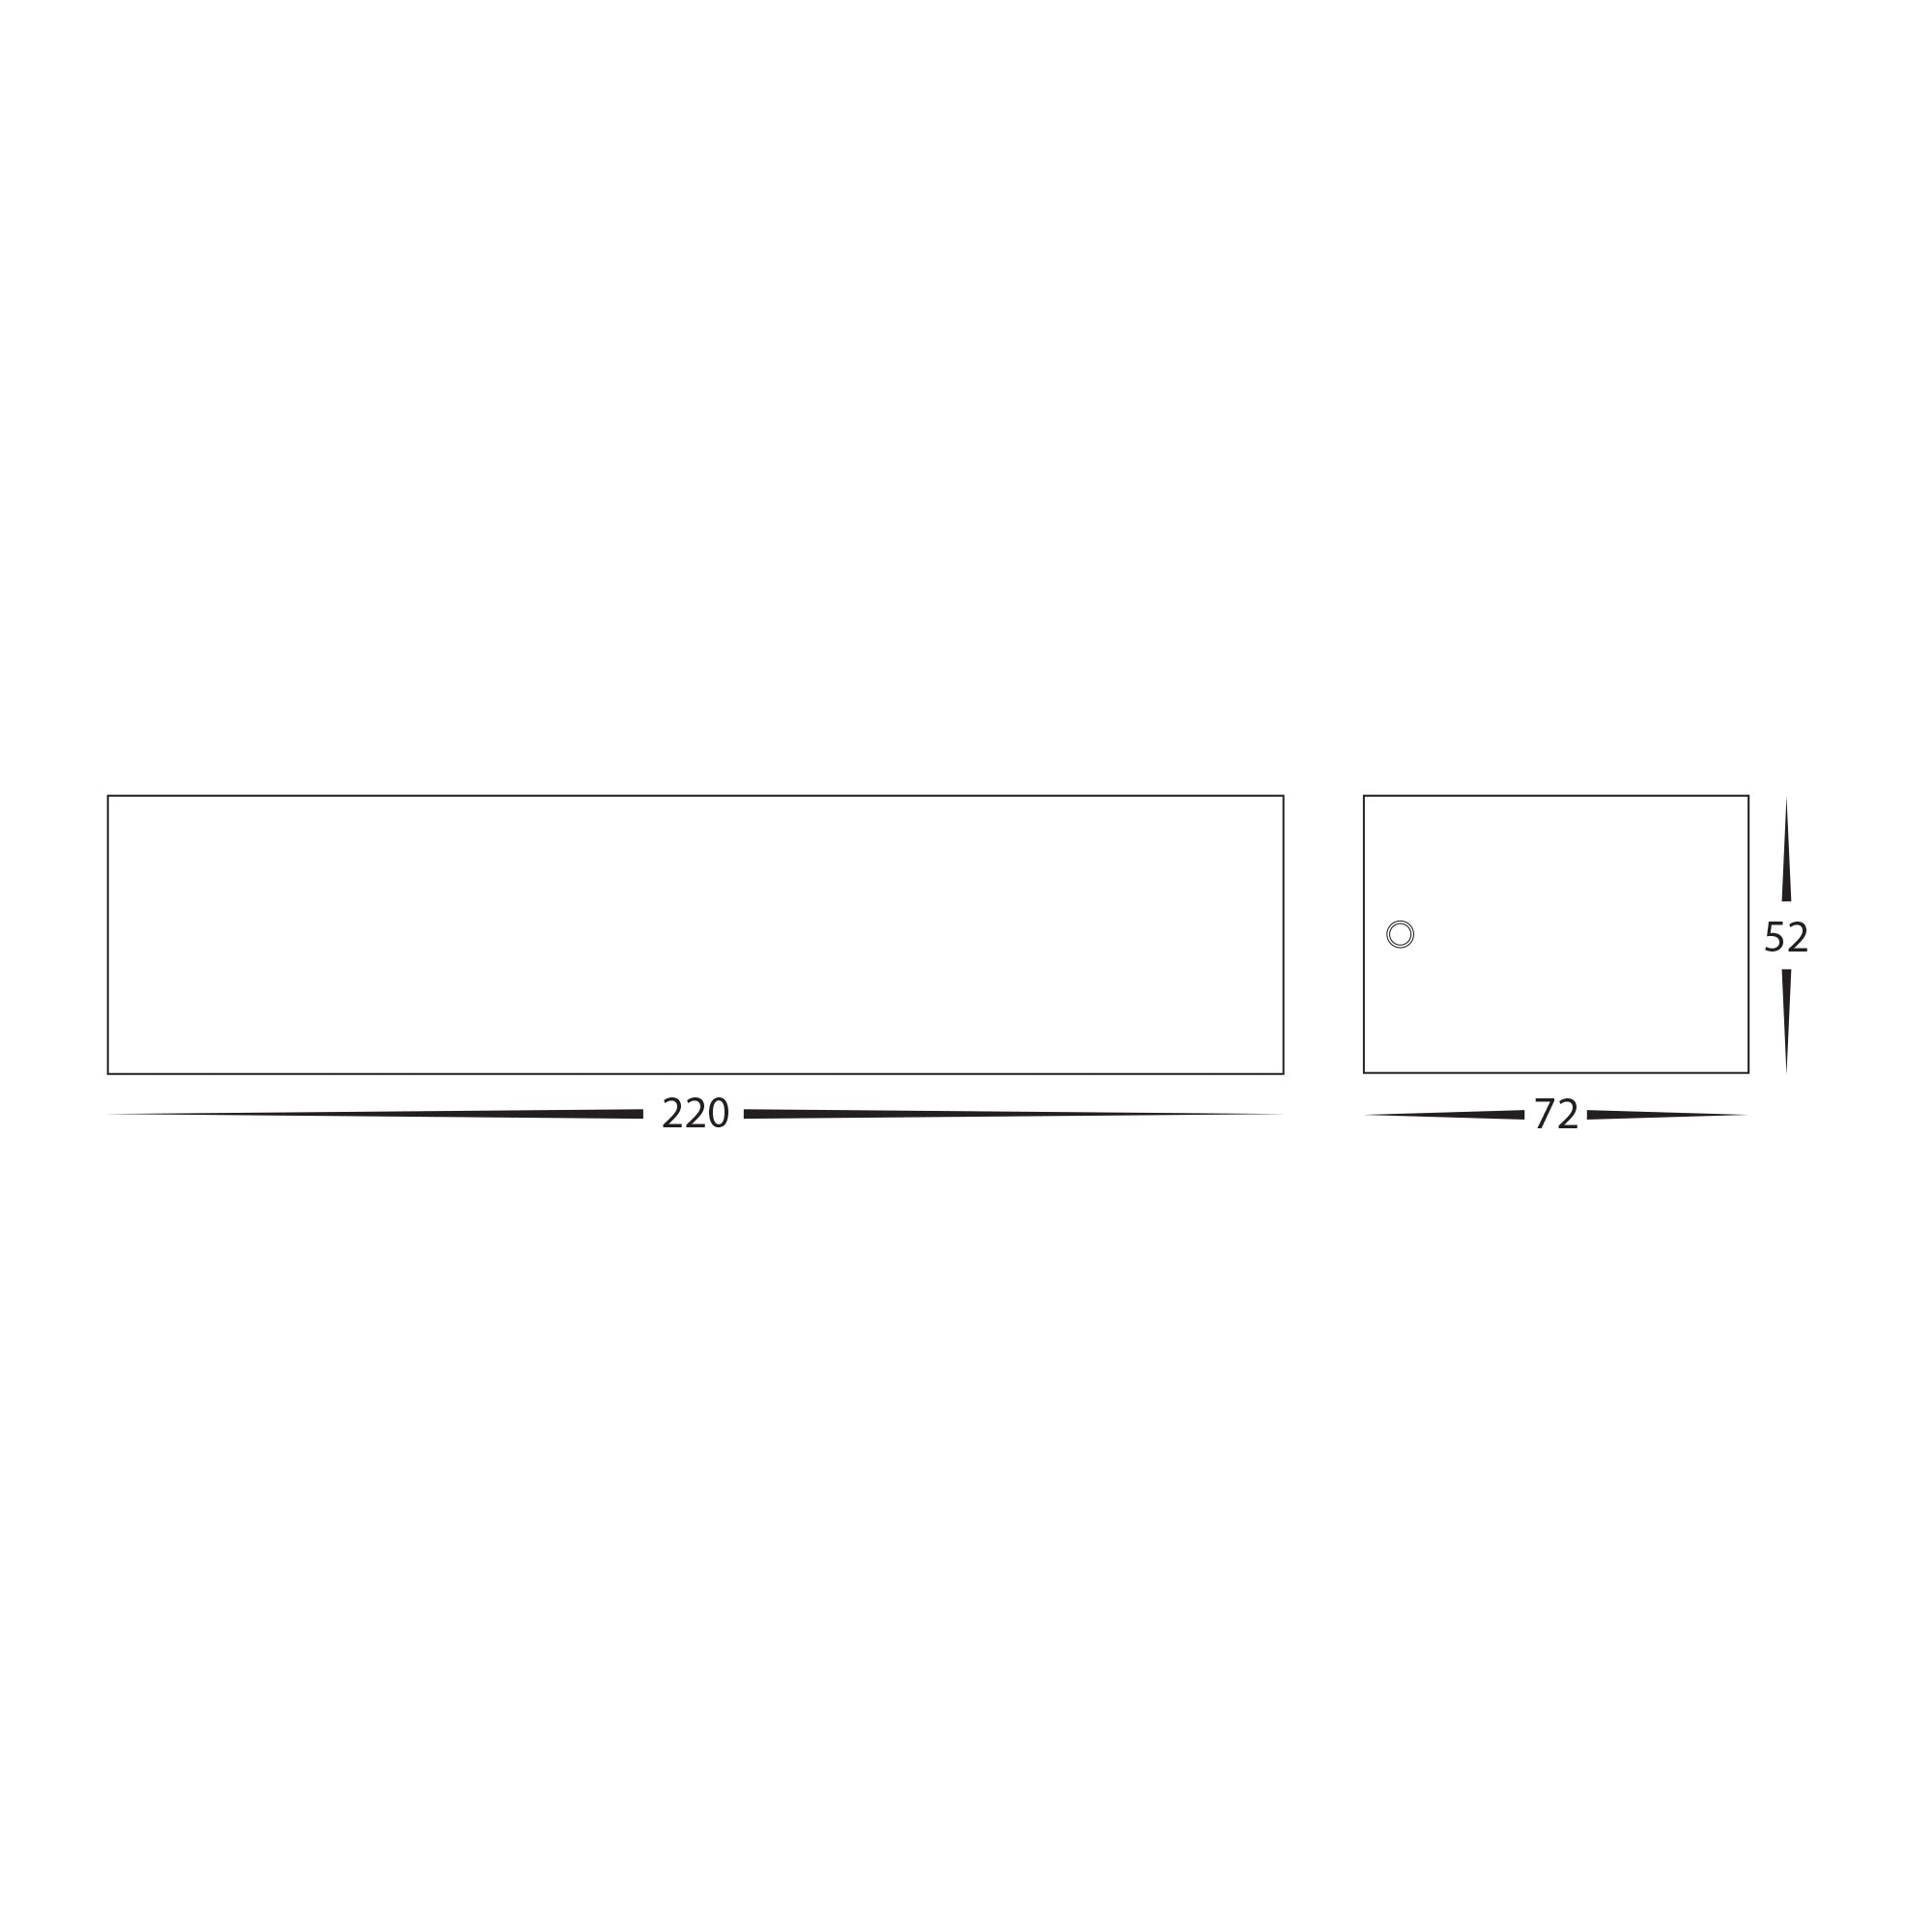 HV3657T-WHT - Siena White LED Up & Down Wall Light